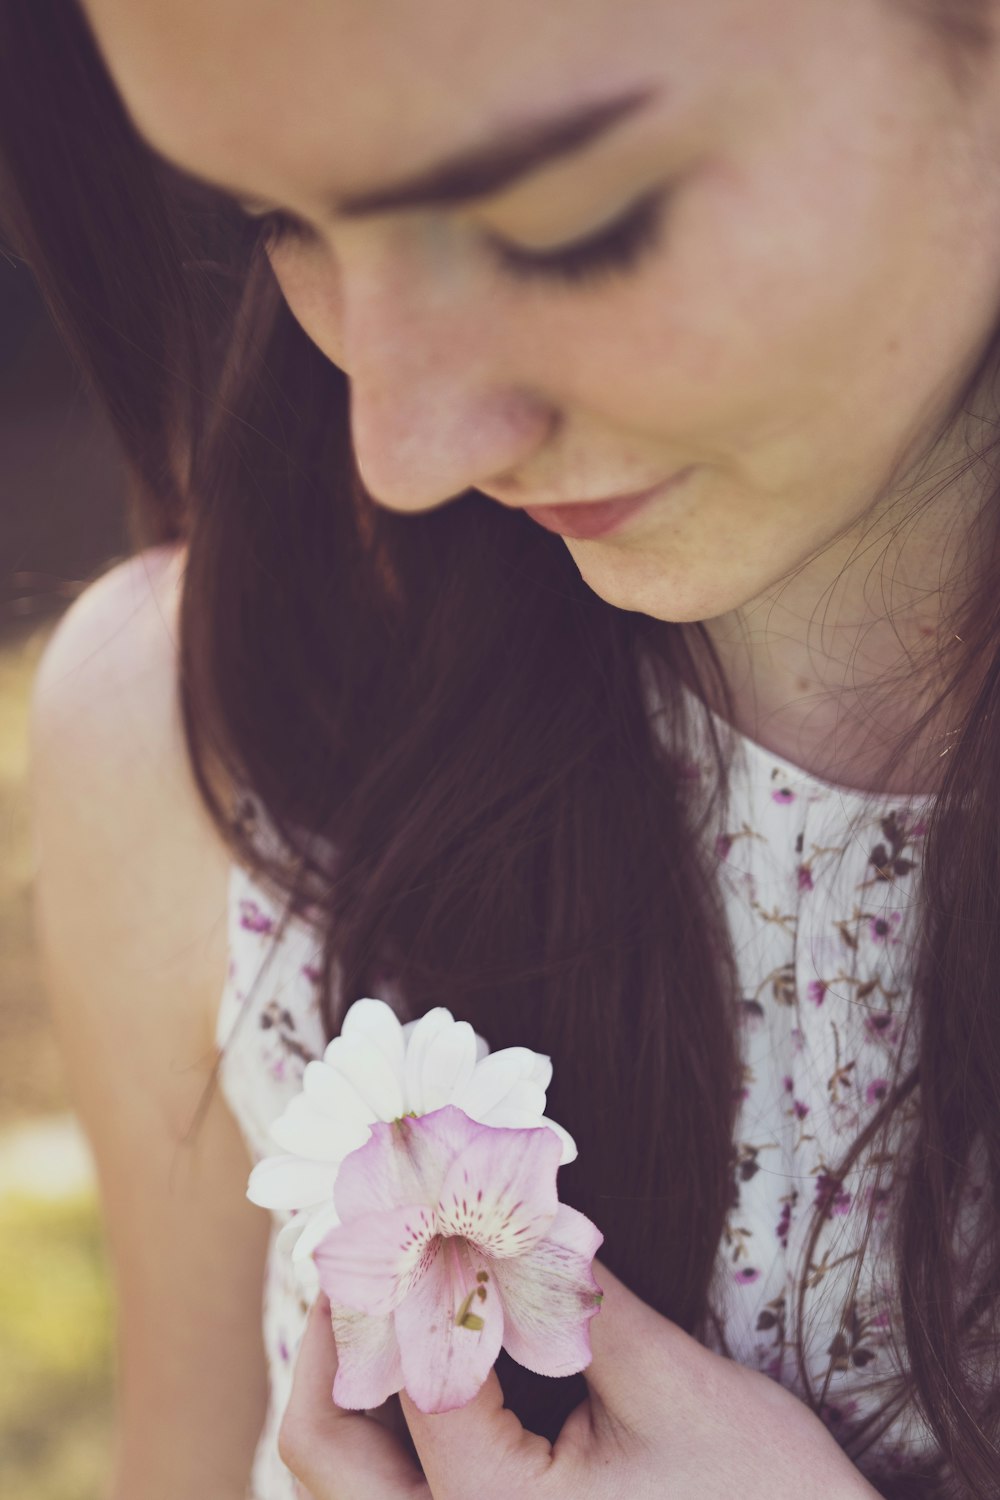 mulher segurando orquídeas brancas e roxas